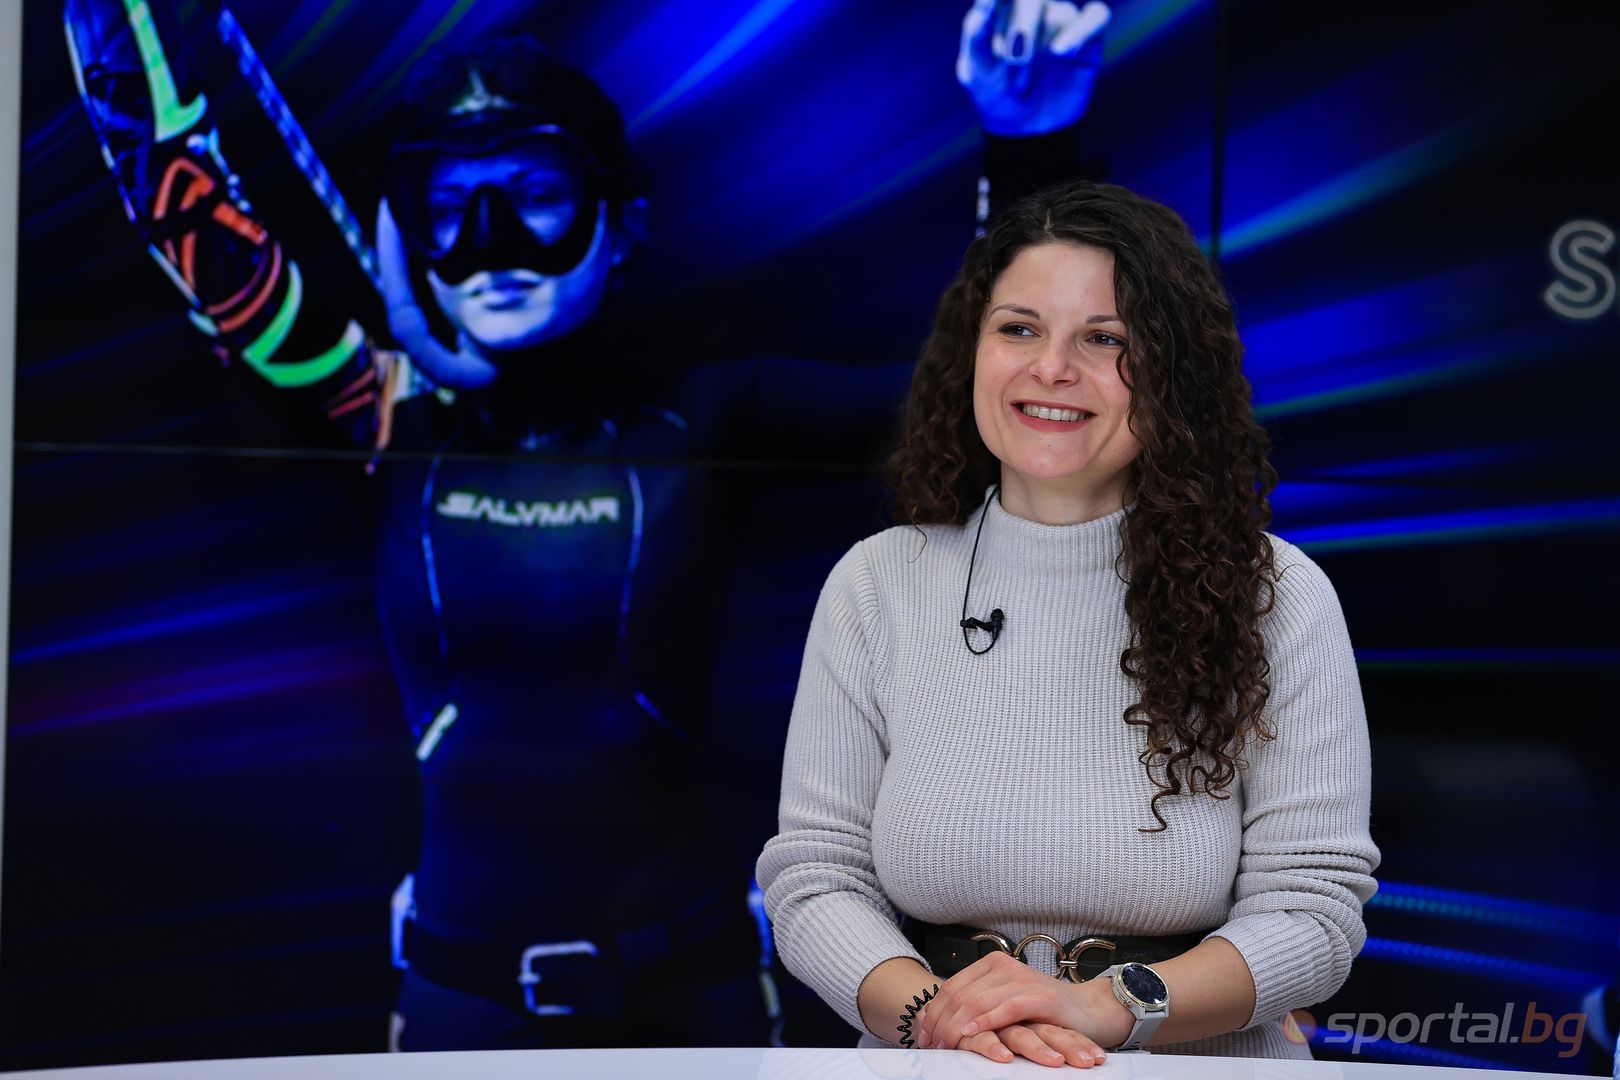 "Интервюто на Sportal.bg" с гост Мария Йорданова